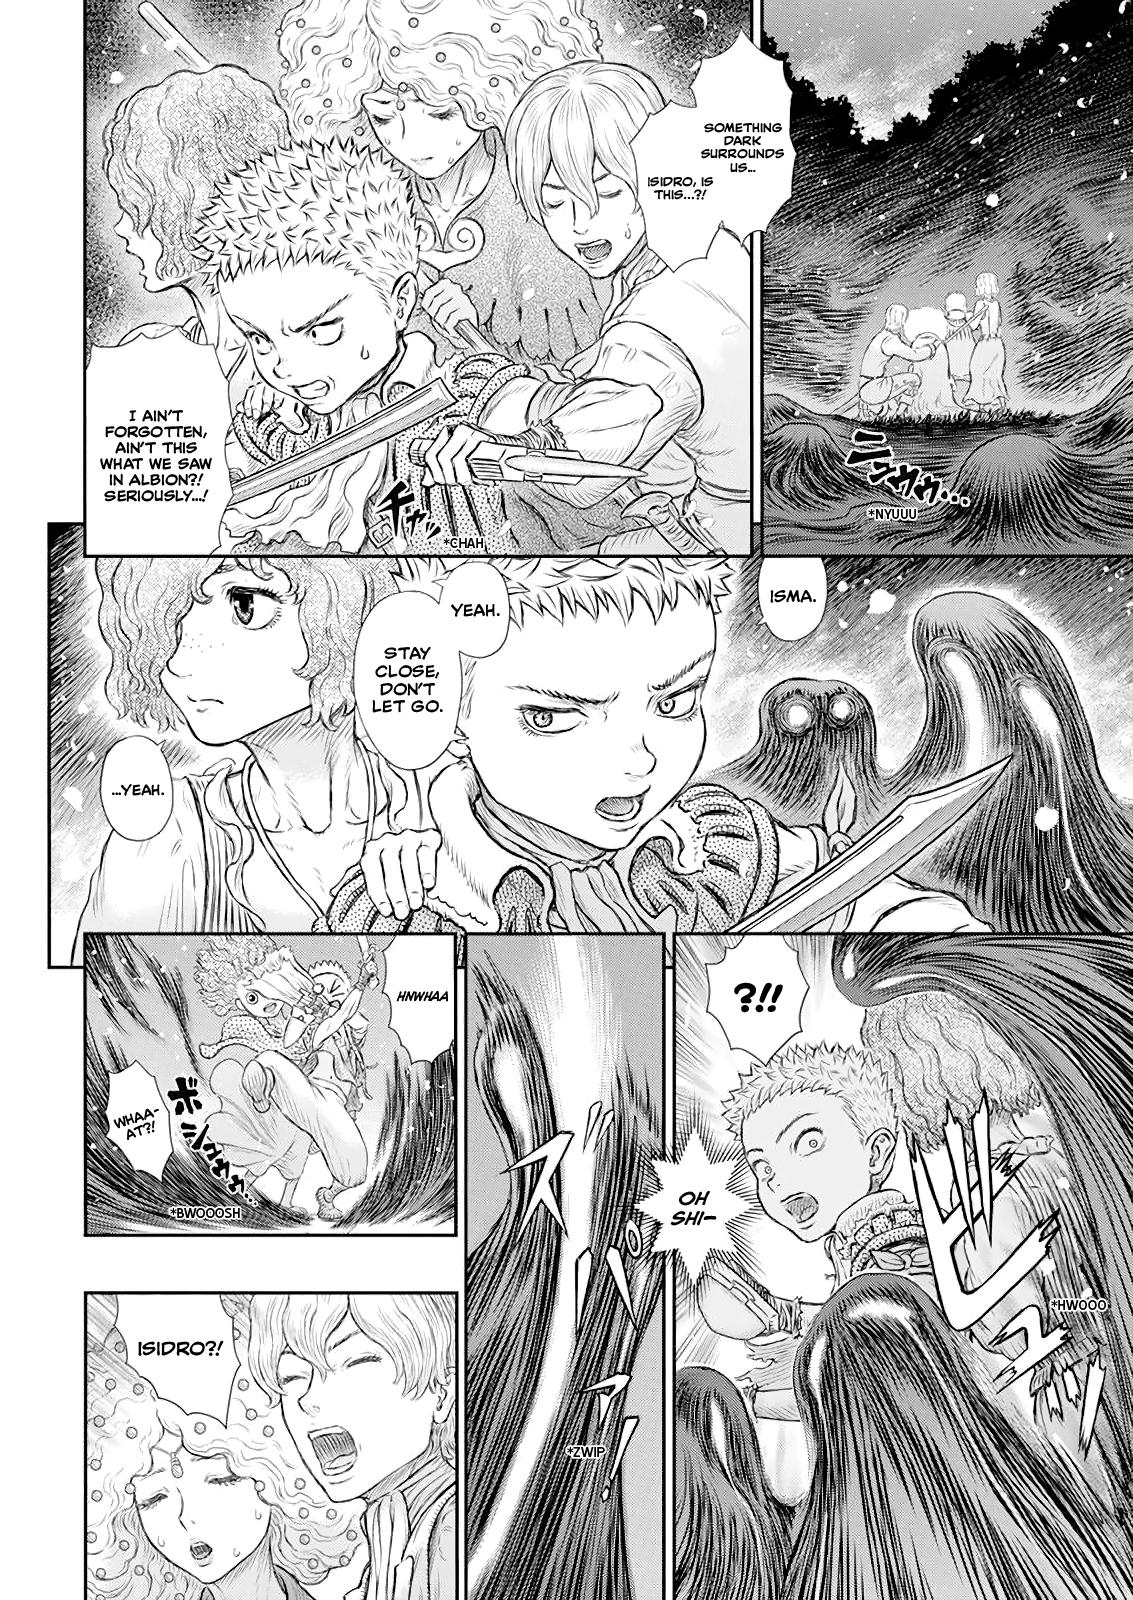 Berserk Manga Chapter 368 image 03